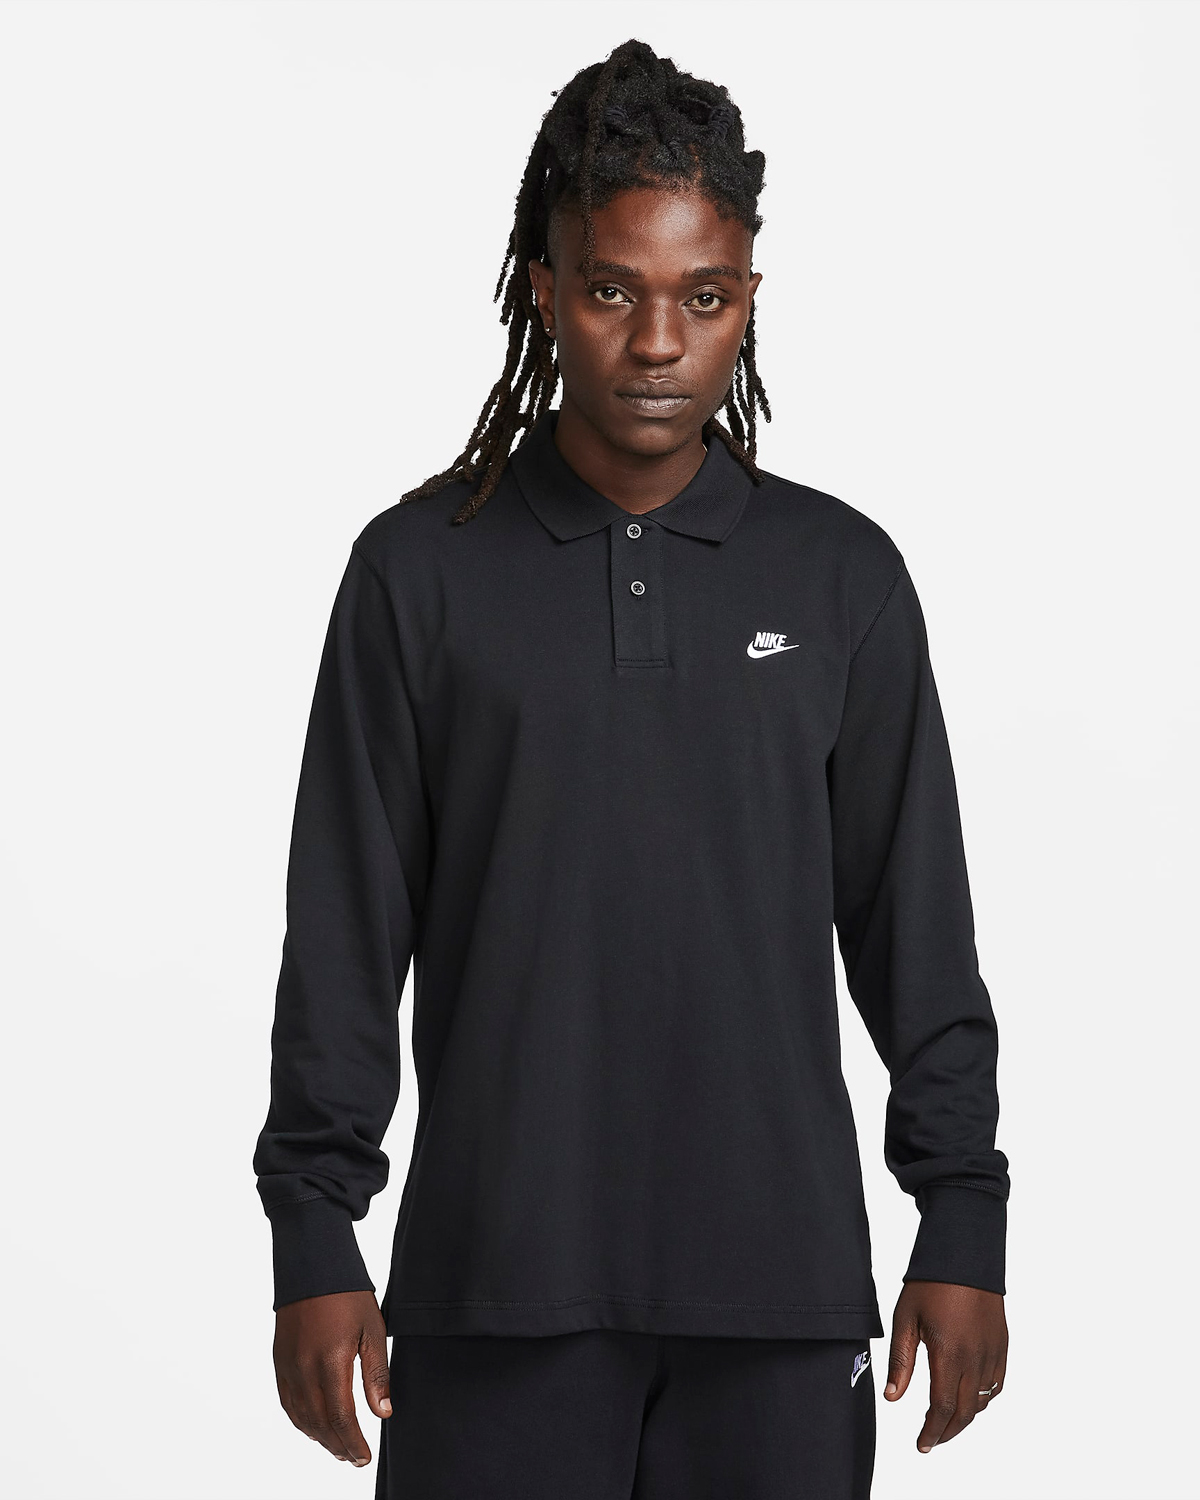 Nike-Club-Long-Sleeve-Polo-Shirt-Black-White